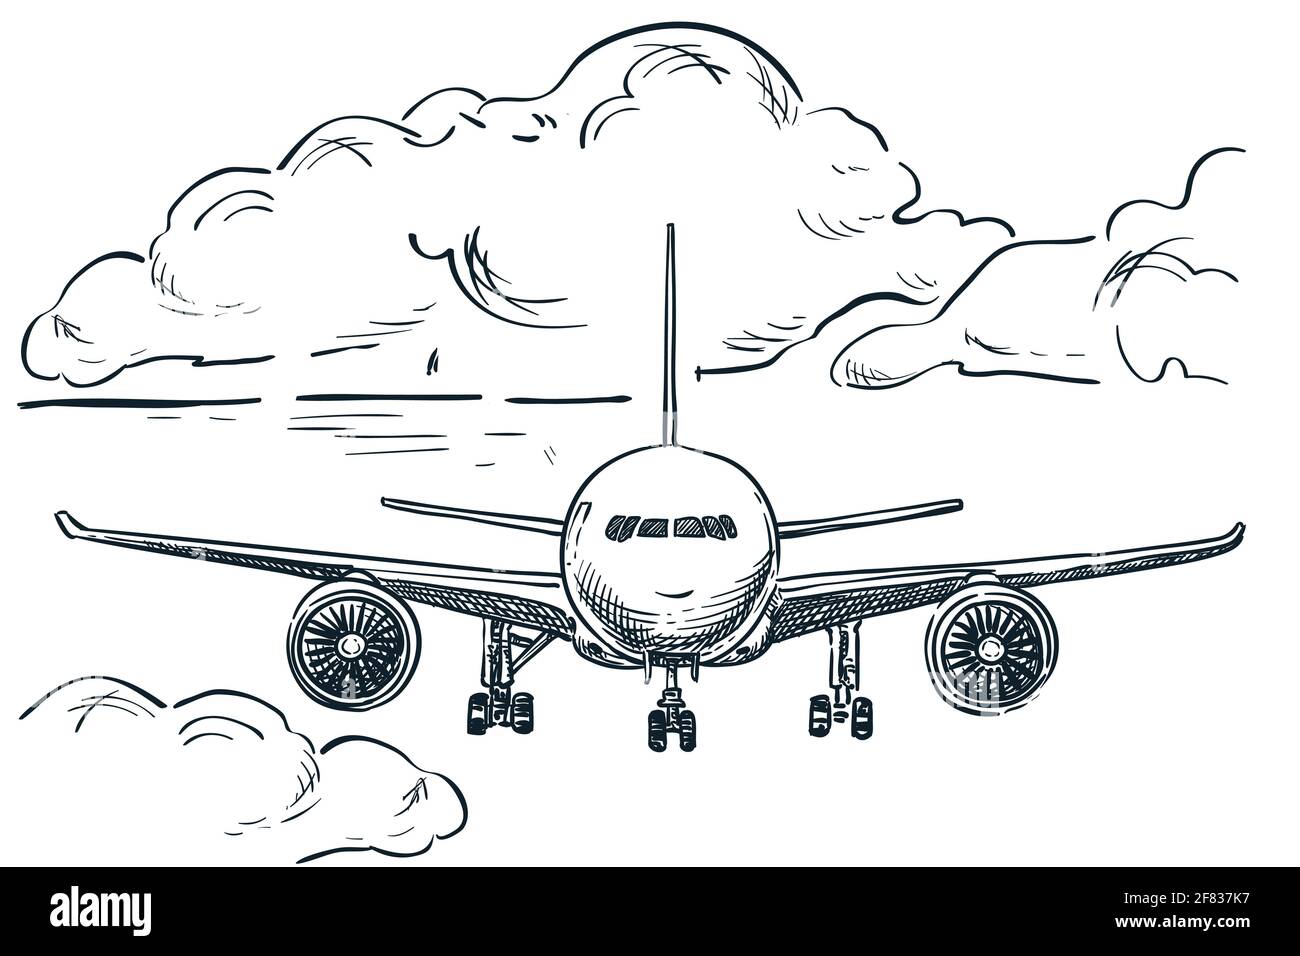 Il piano vola nel cielo, illustrazione dello schizzo vettoriale disegnata a mano. Sfondo del disegno del volo aereo. Elementi di design isolati per turismo, viaggi e vacanze Illustrazione Vettoriale